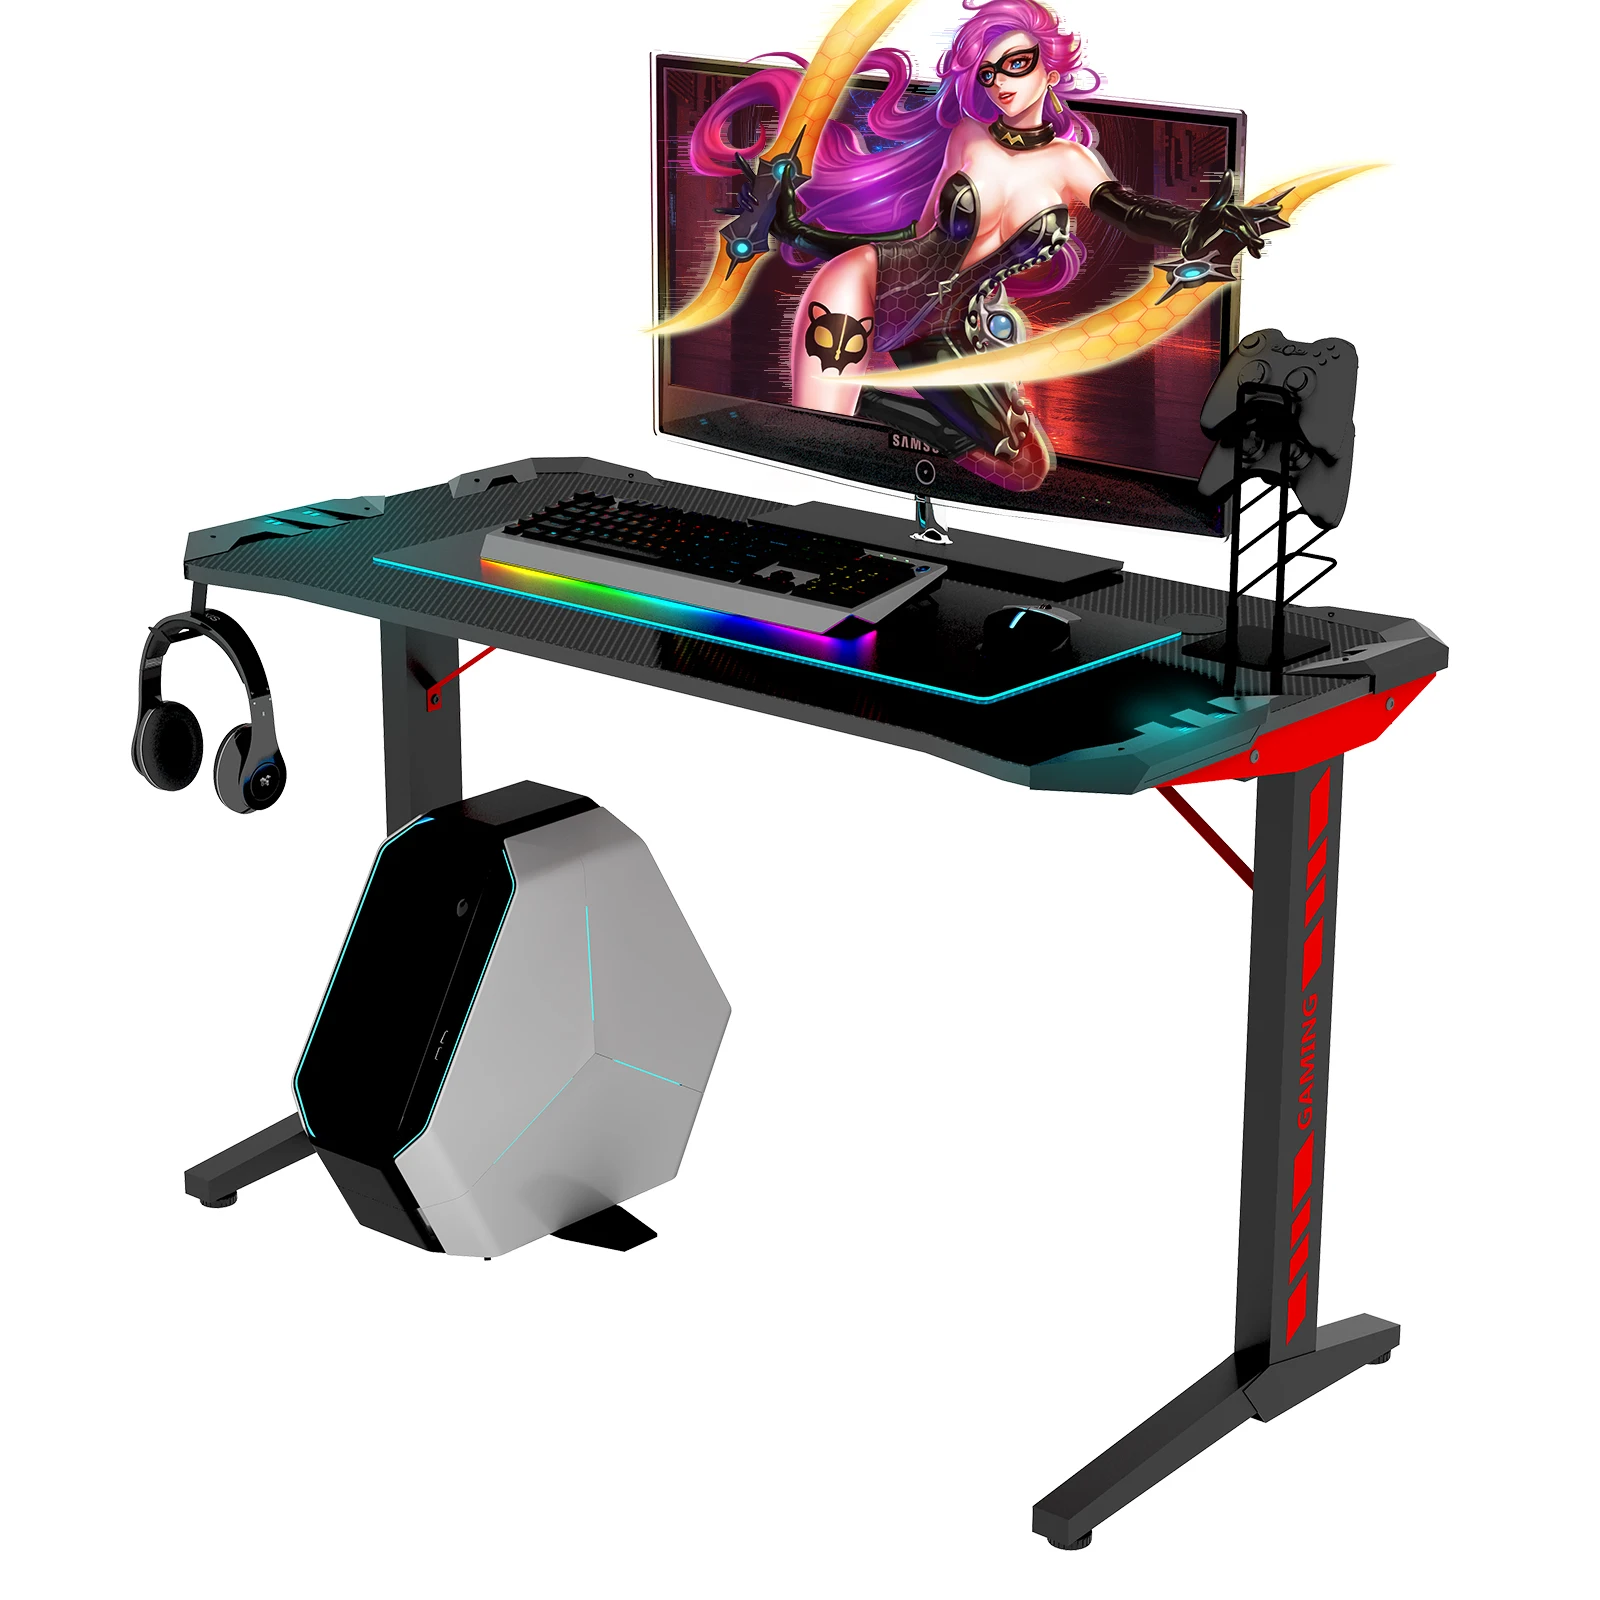 [Распродажа] Высококачественный игровой стол Т-образной формы из черного МДФ, светодиодный игровой стол с гарнитурой и держателем геймпада [US-W]